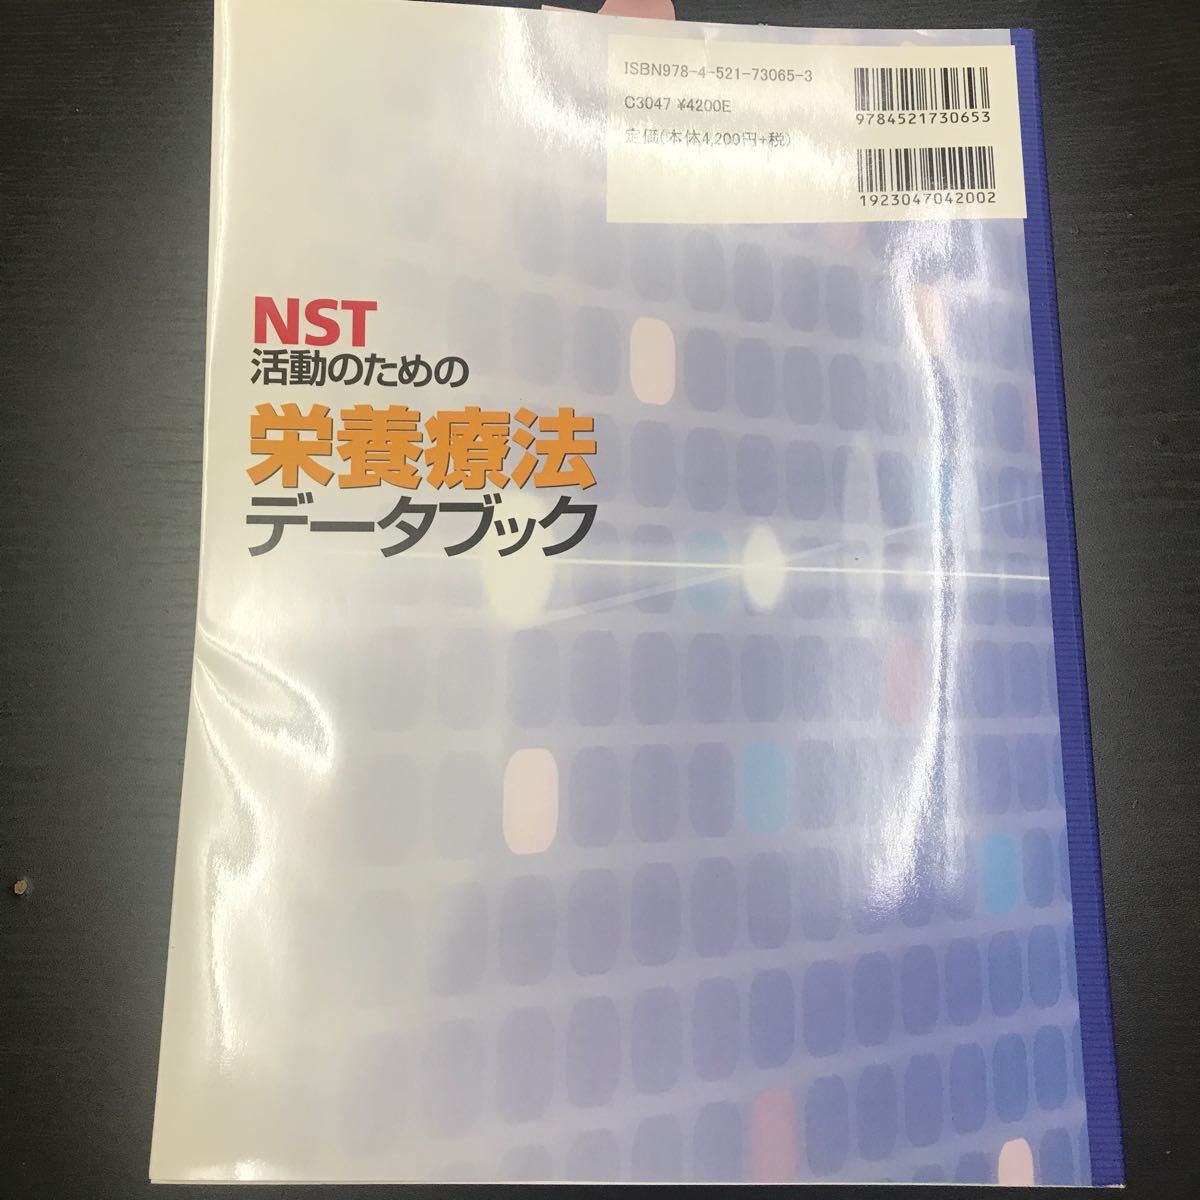 NST活動のための栄養療法データブック/東口高志